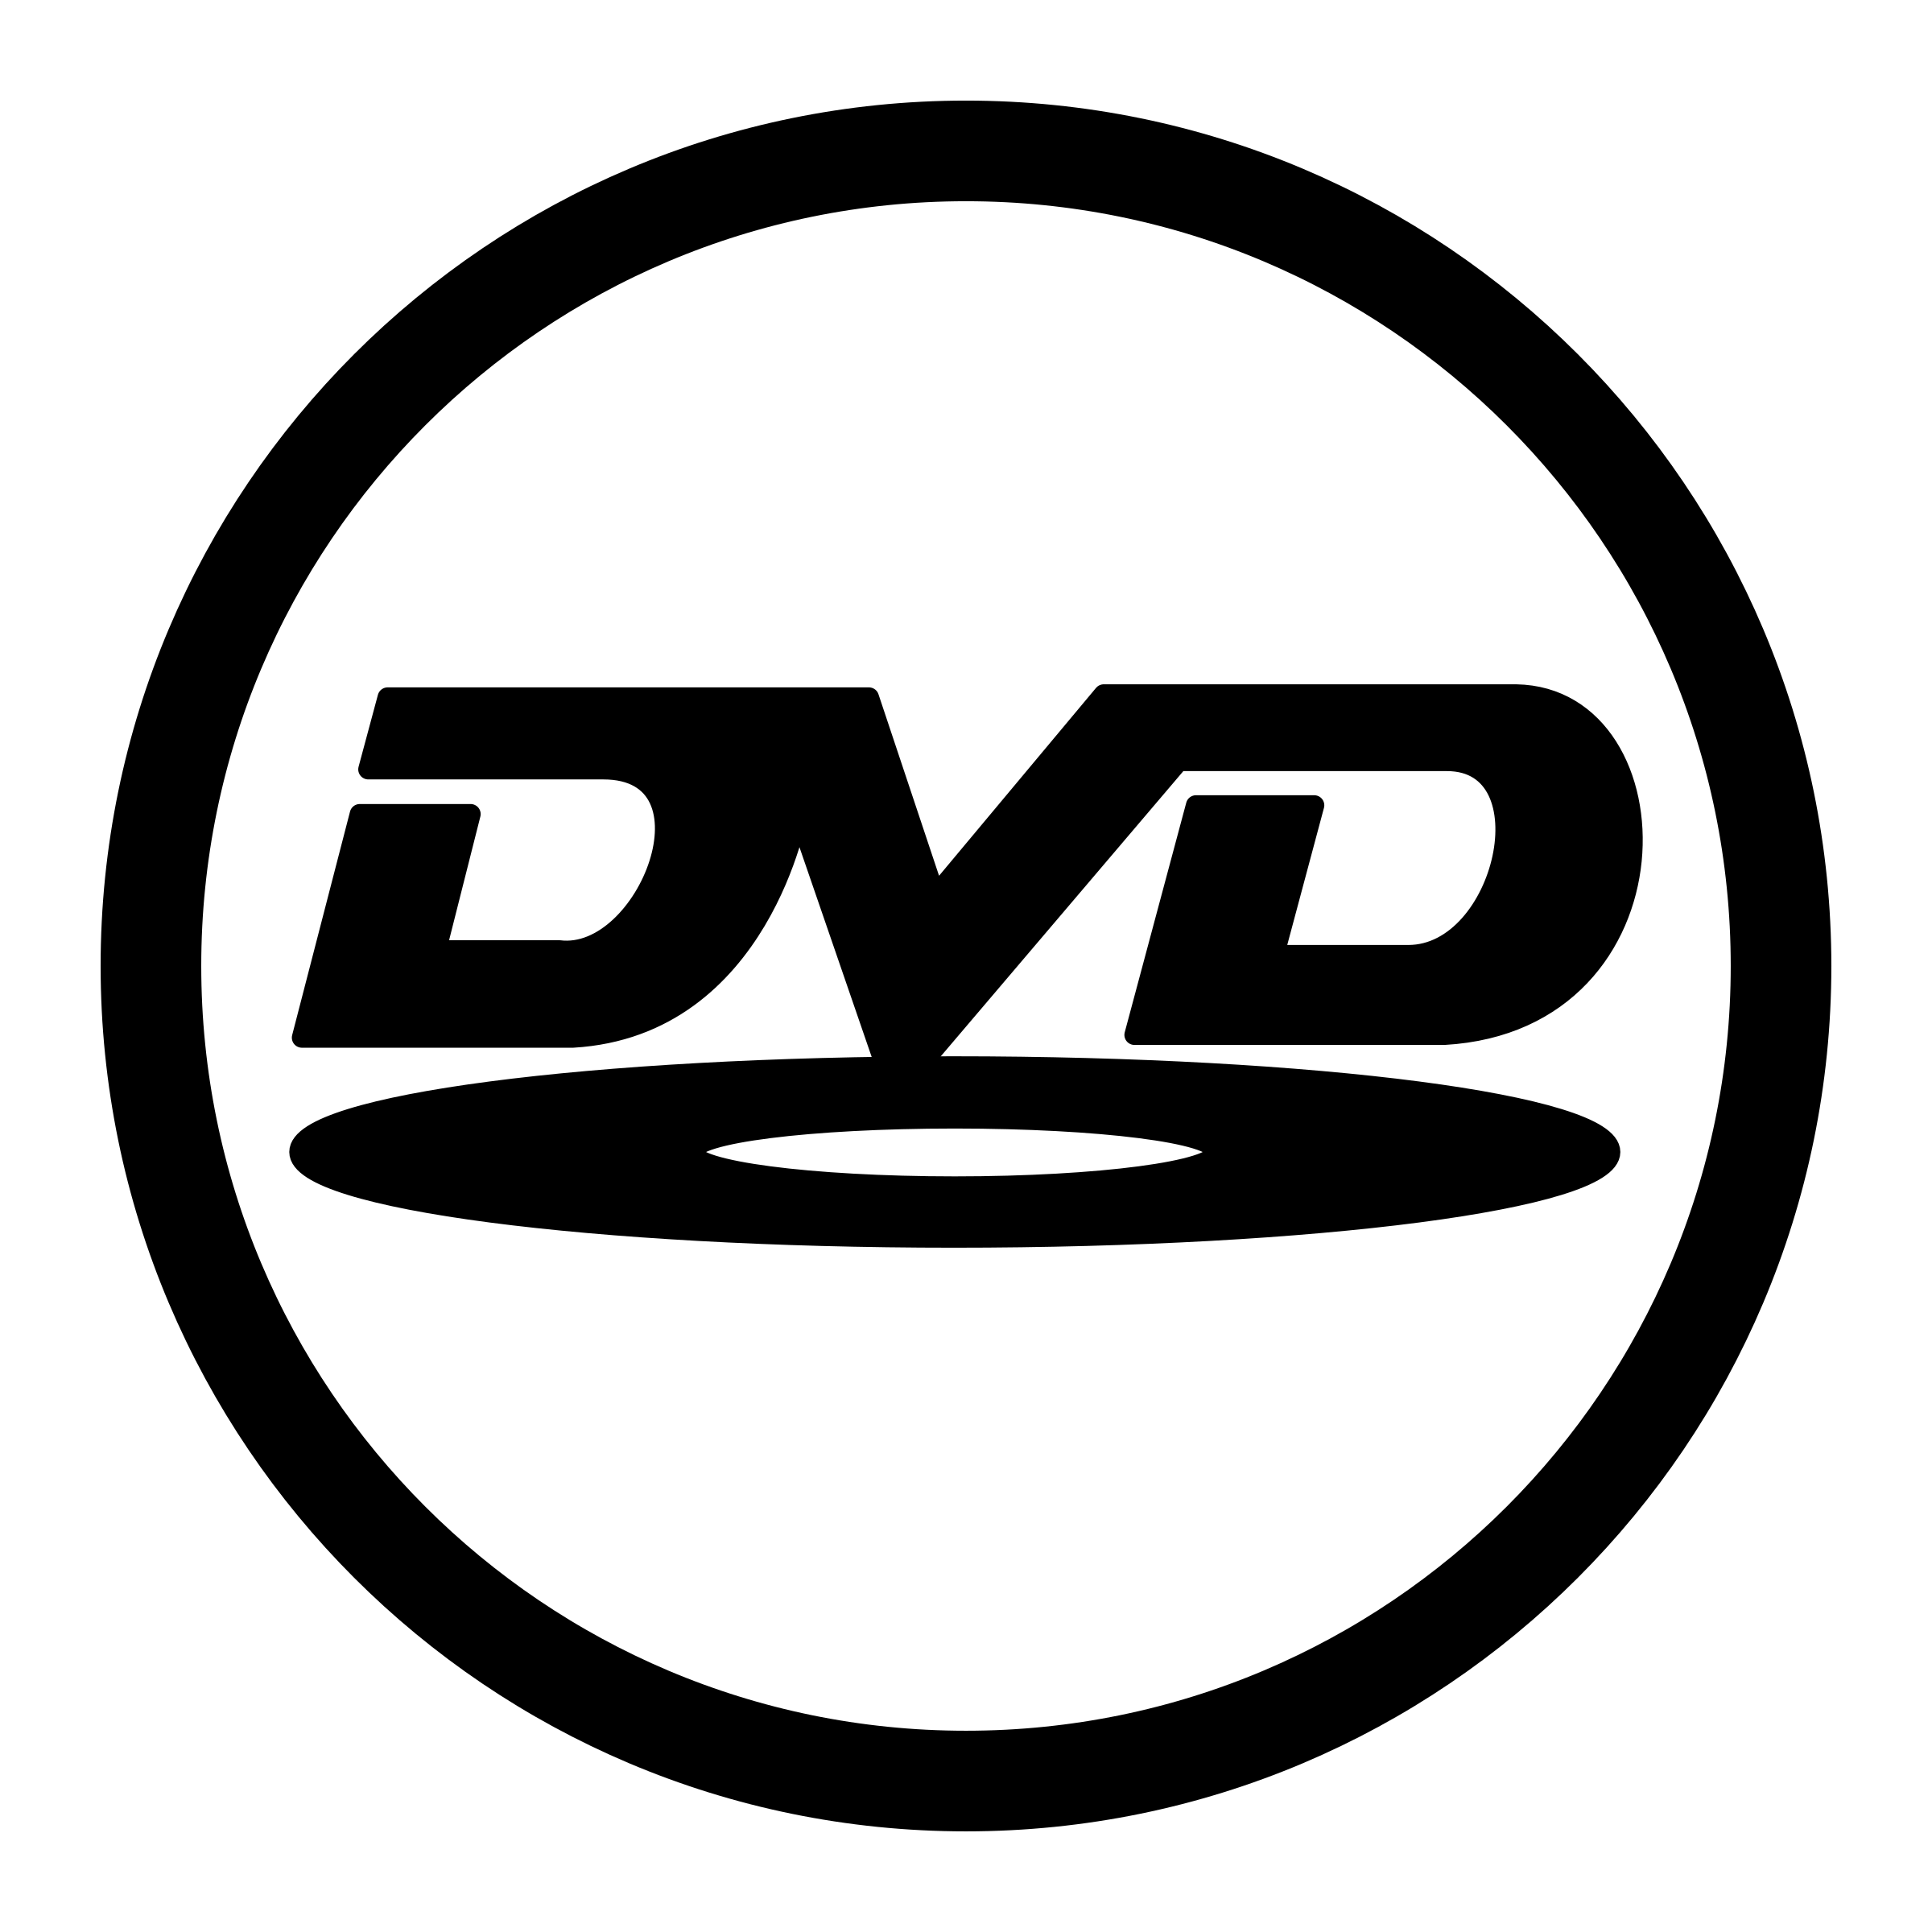 Cd Dvd Clip Art at Clker.com - vector clip art online, royalty - Clip ...